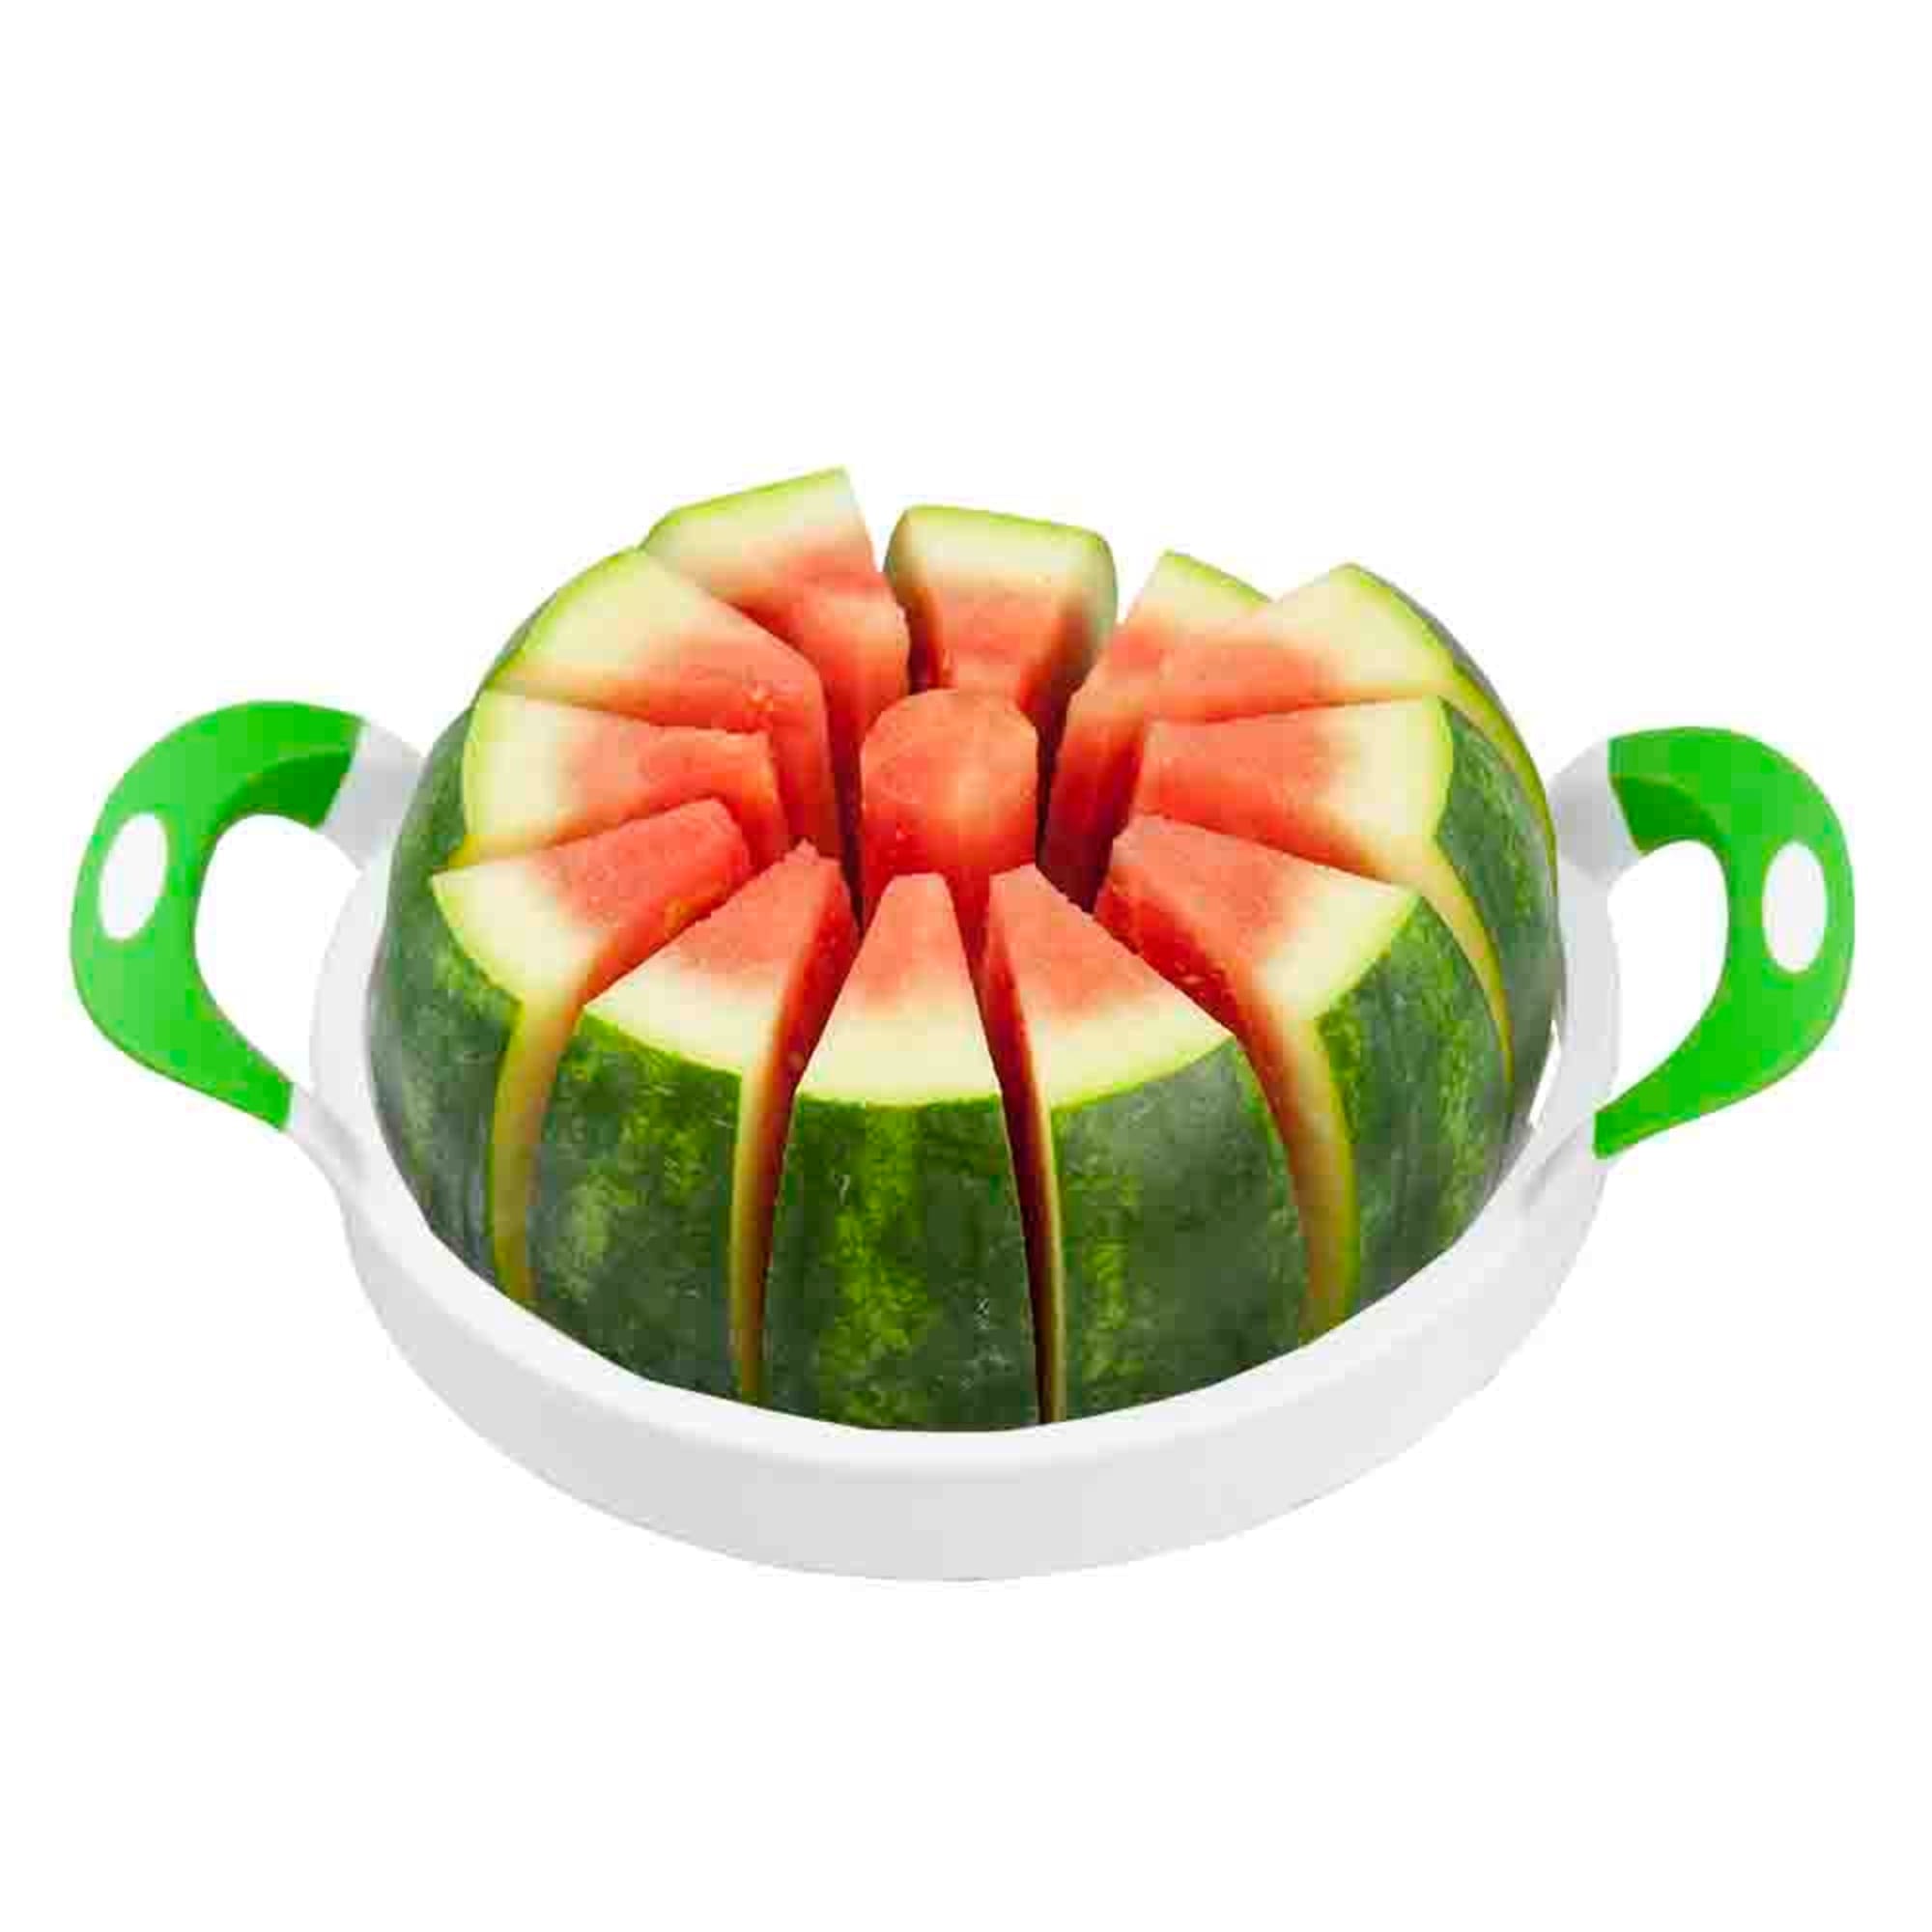 Home Basics Plastic Melon Slicer $10.00 EACH, CASE PACK OF 12